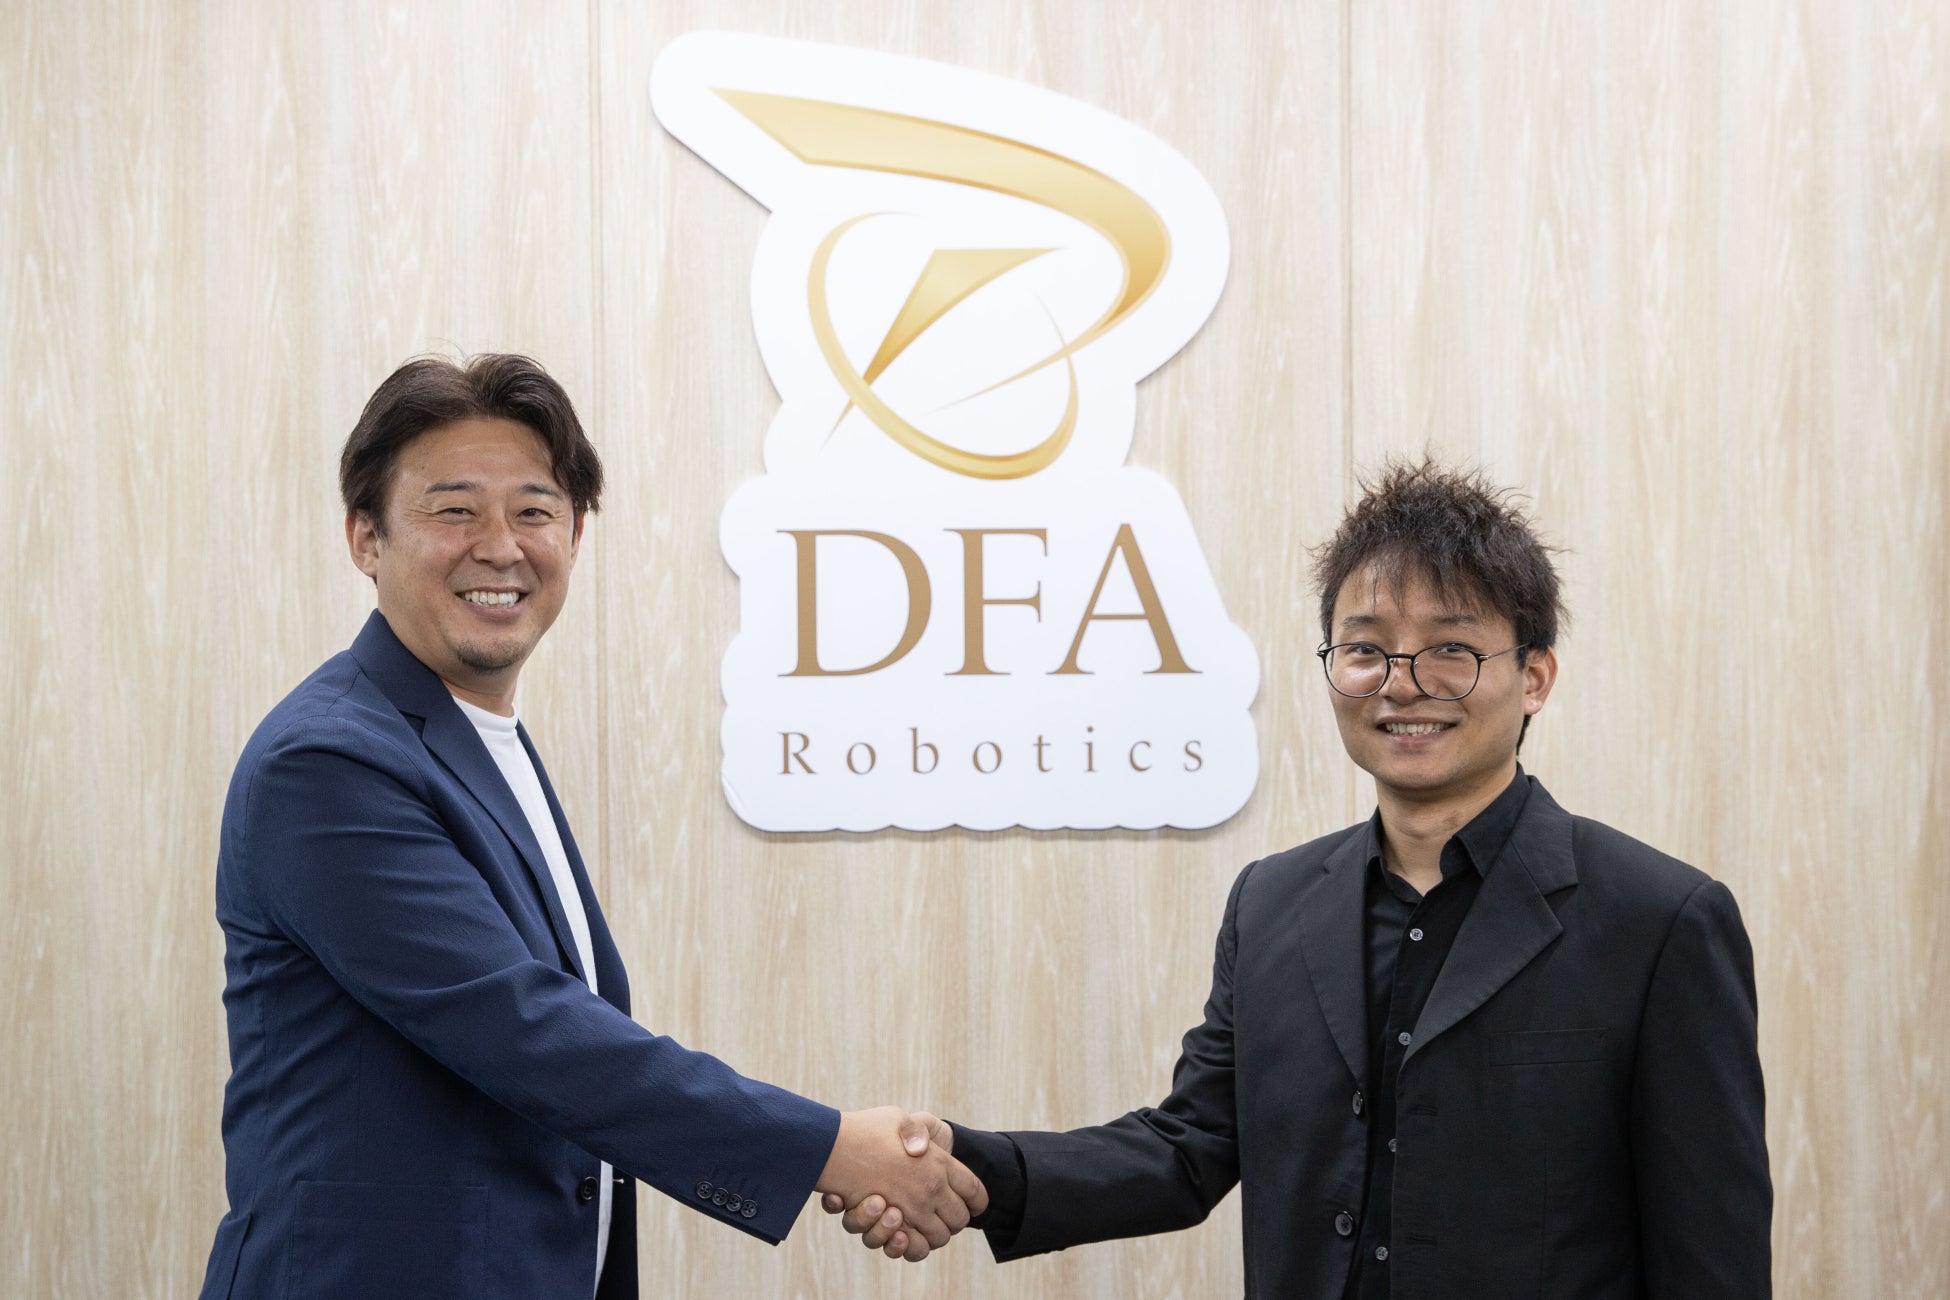 DFA Robotics、Pudu Robotics Japanと共同で、ロボットを活用した日本の飲食店オペレーションにおける最適化を目指す「おもてなしRX®プロジェクト」を始動